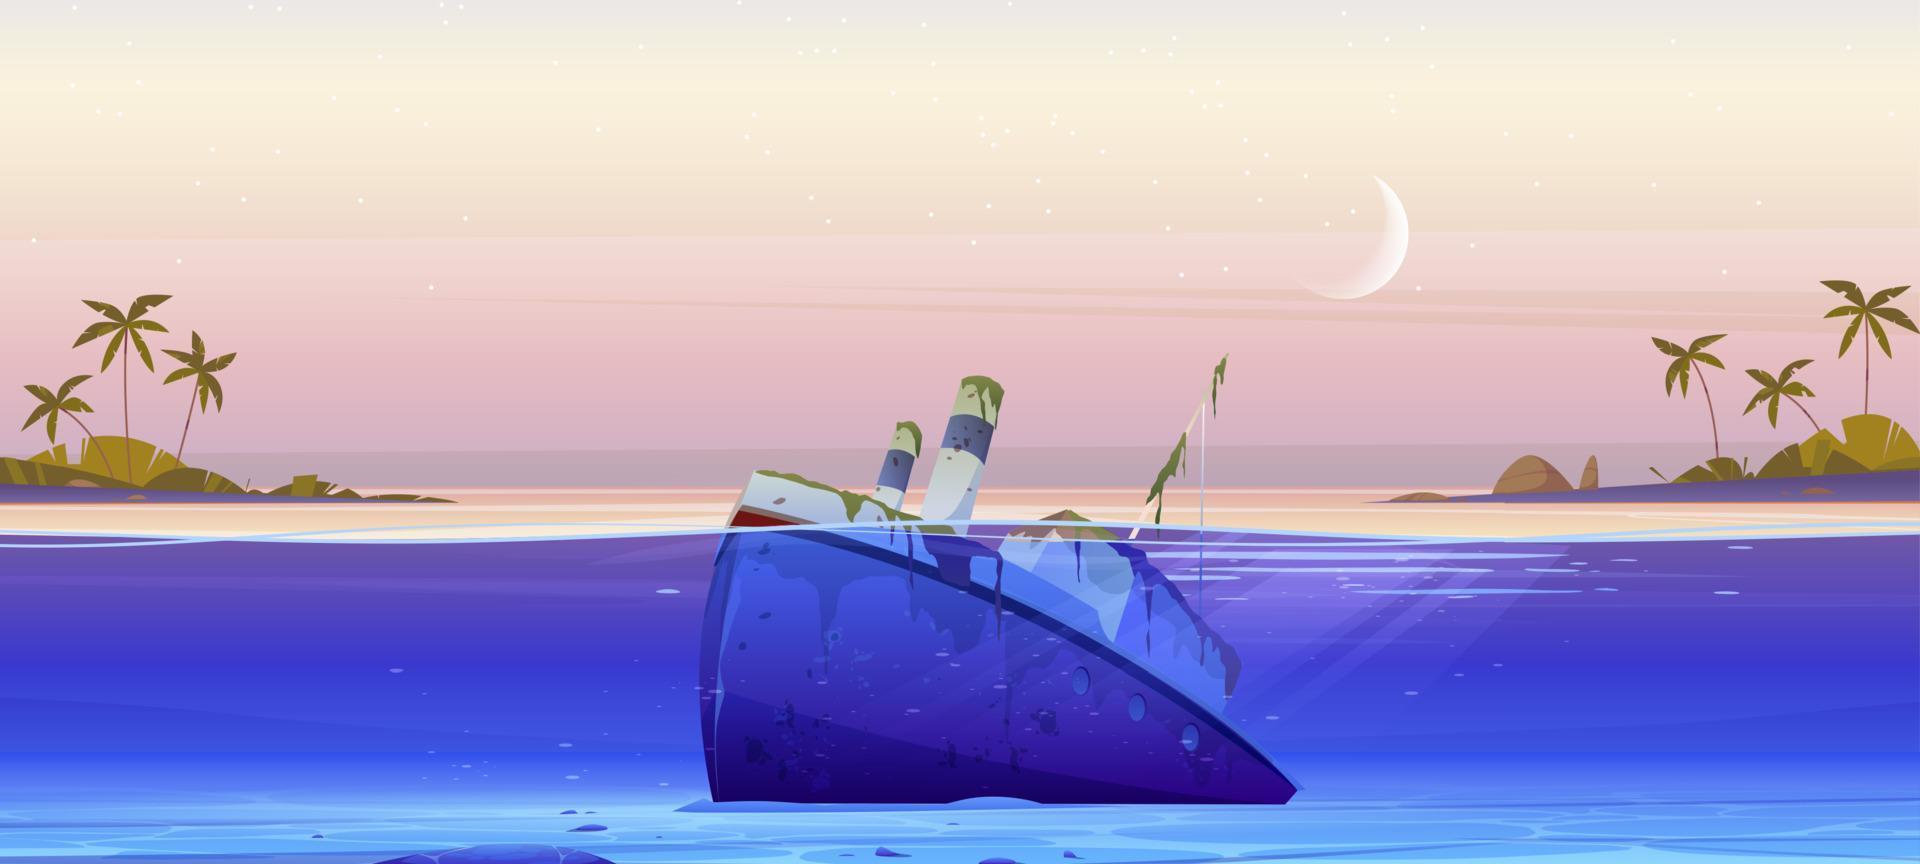 Wreck ship, sunken steamboat lying on ocean bottom vector